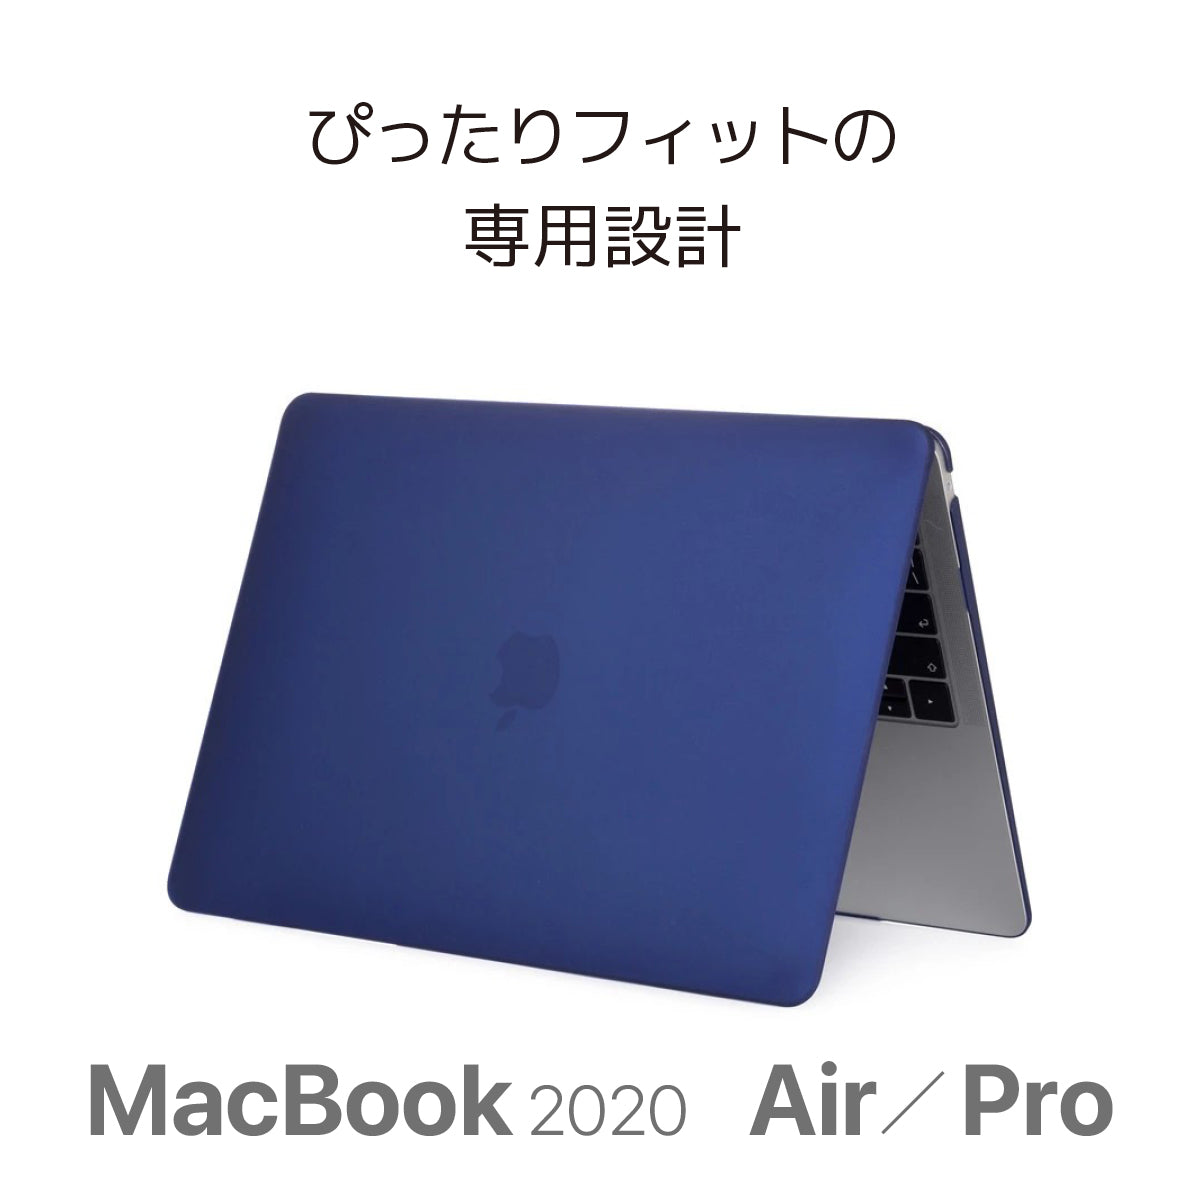 MacBook Air Pro 13.3 14.2 16.2 クリア PC ケース ハードカバー プラスチック  極薄 放熱 耐衝 軽量 キズ防止 クリア 黒 グレー ネイビー ハードシェルケース A2442 A2485 A2338 A2337  マックブック エアー